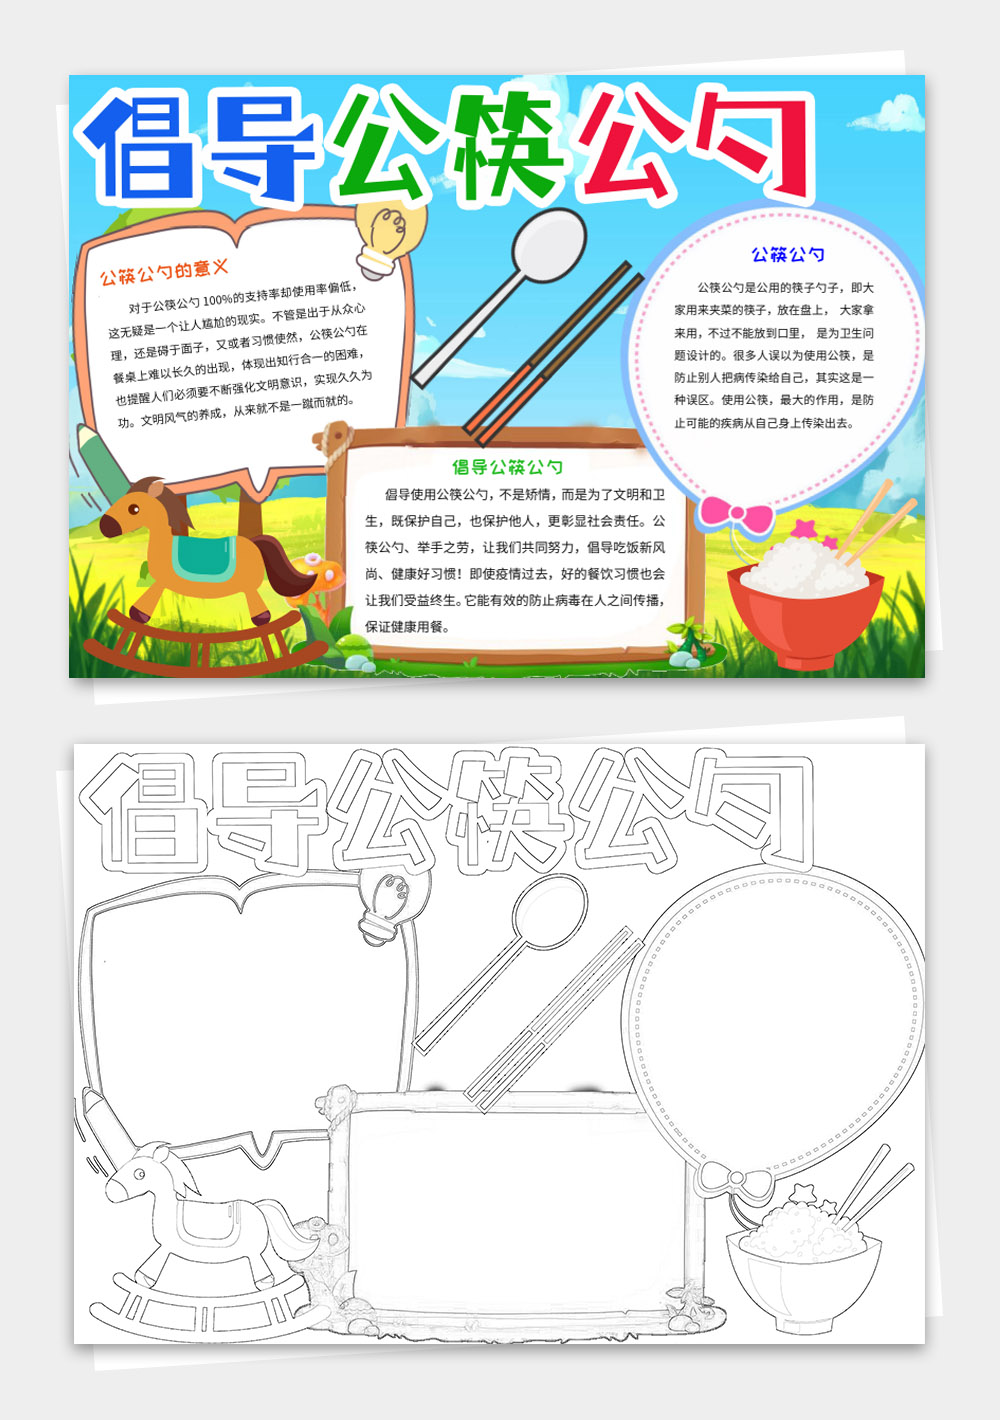 卡通文明用餐使用公筷公勺小报手抄报